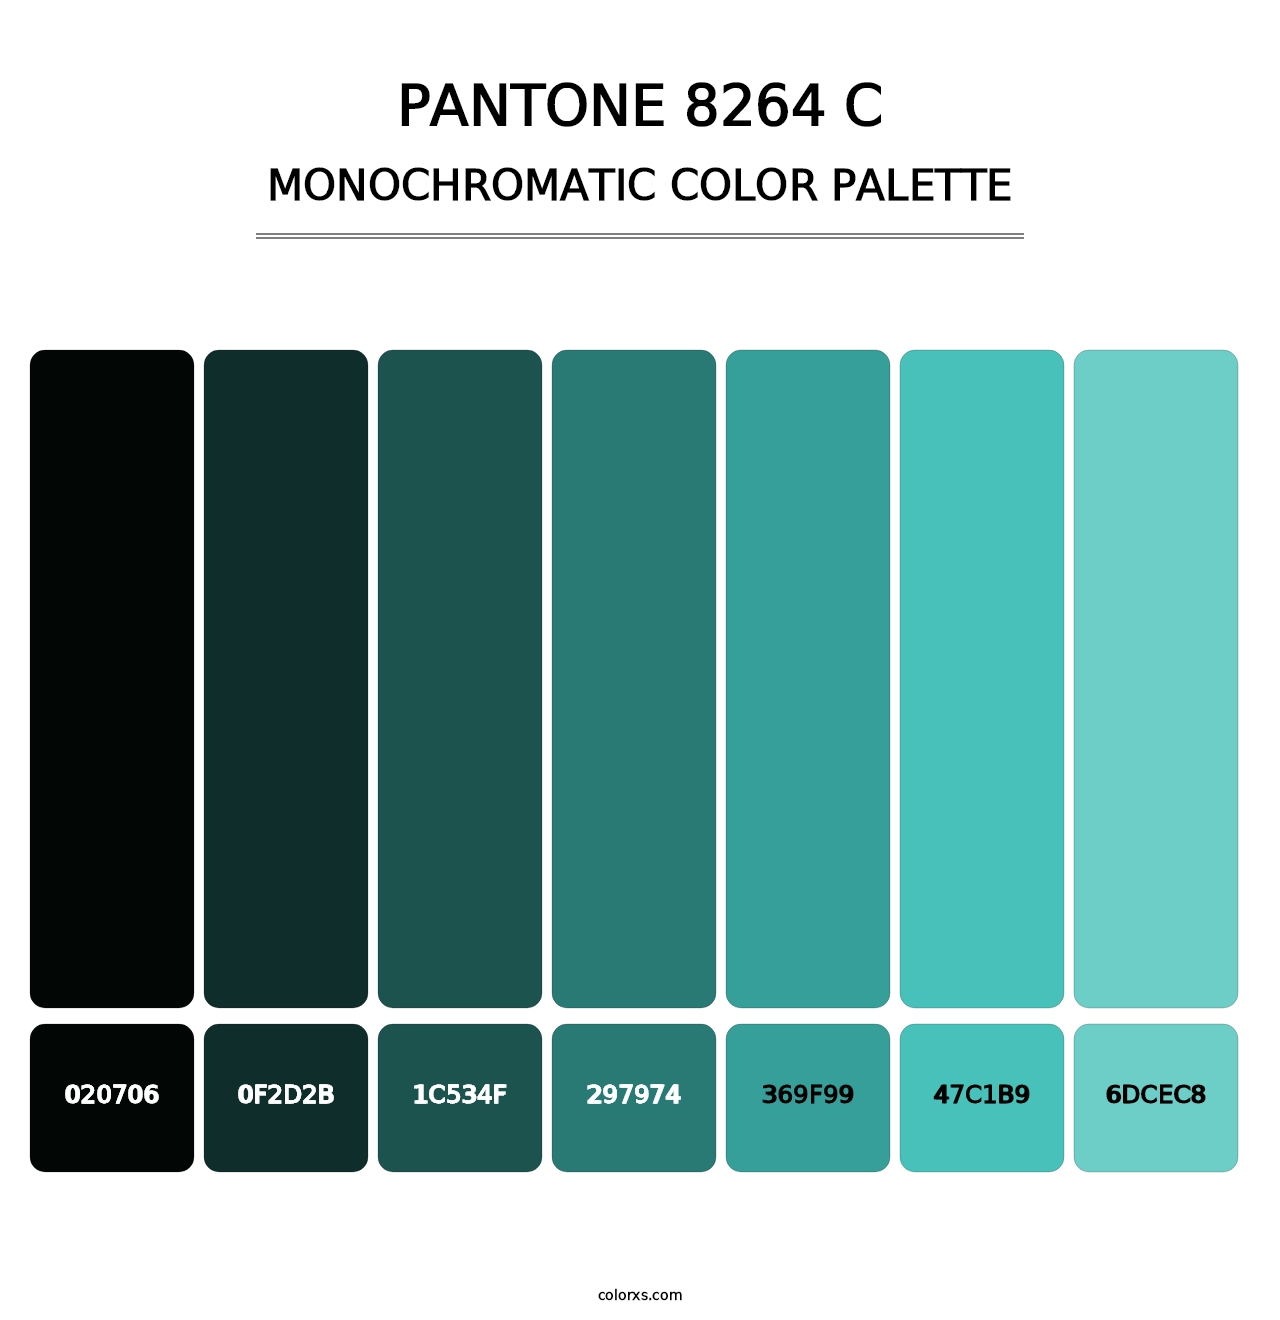 PANTONE 8264 C - Monochromatic Color Palette